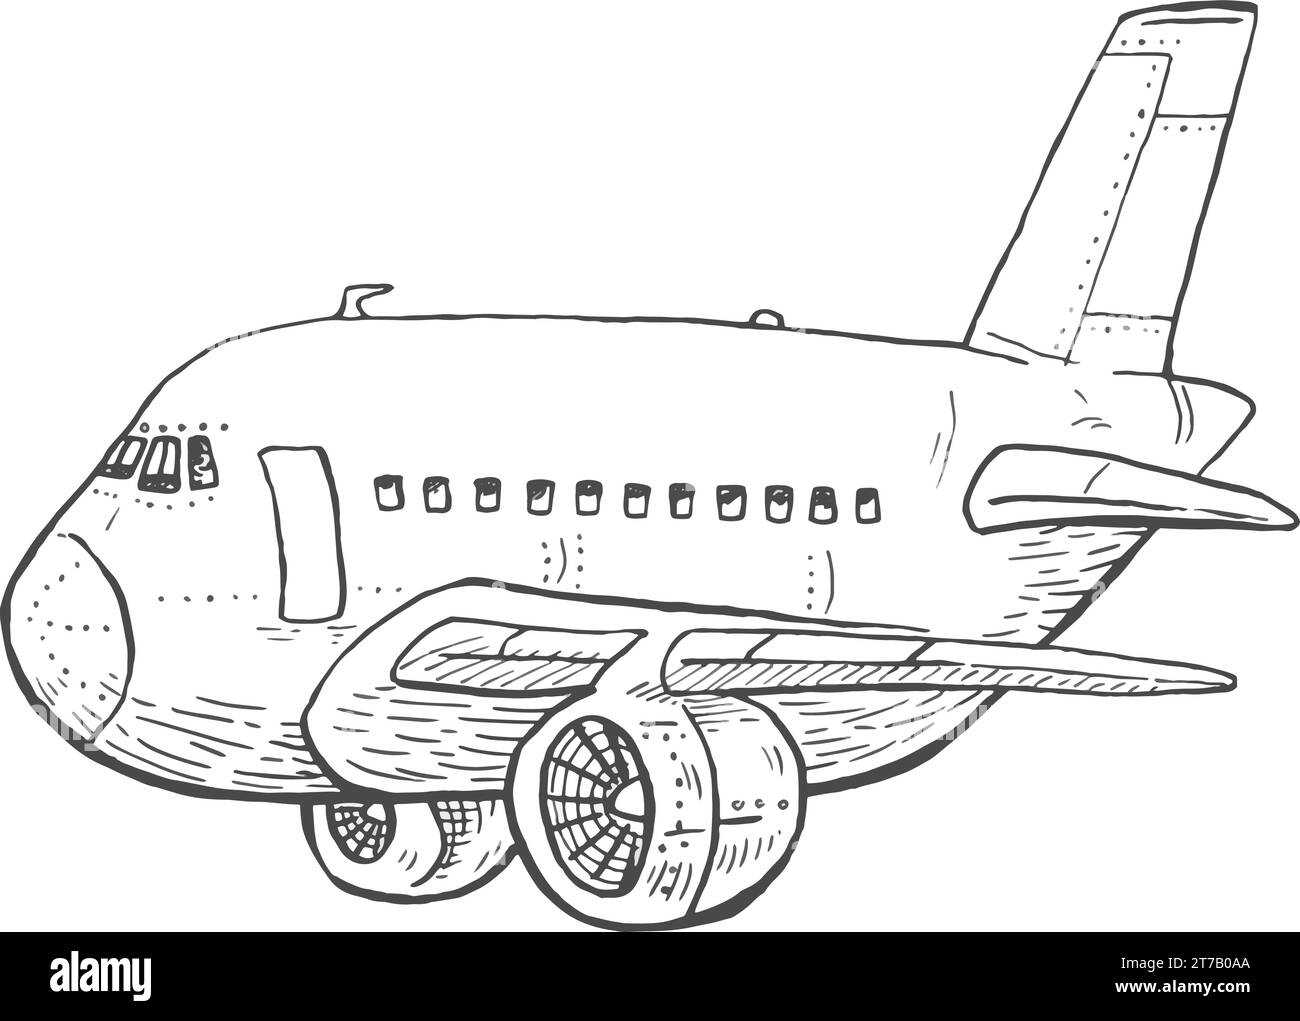 Disegno linea aereo illustrazione vettoriale in bianco e nero isolata su sfondo bianco Illustrazione Vettoriale